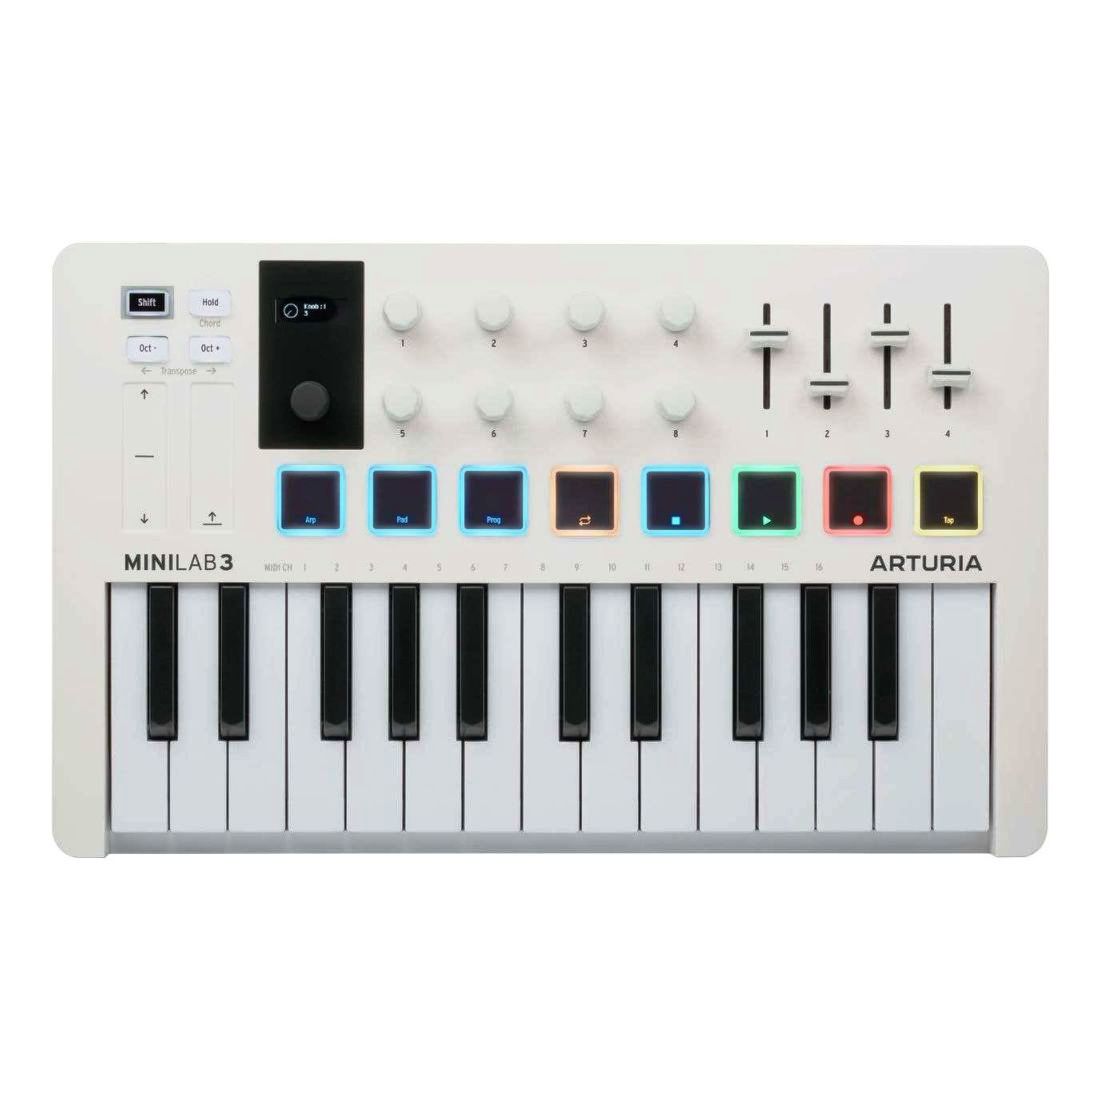 Контроллер Arturia MiniLab 3 для создания музыки универсальный, белый цена и фото